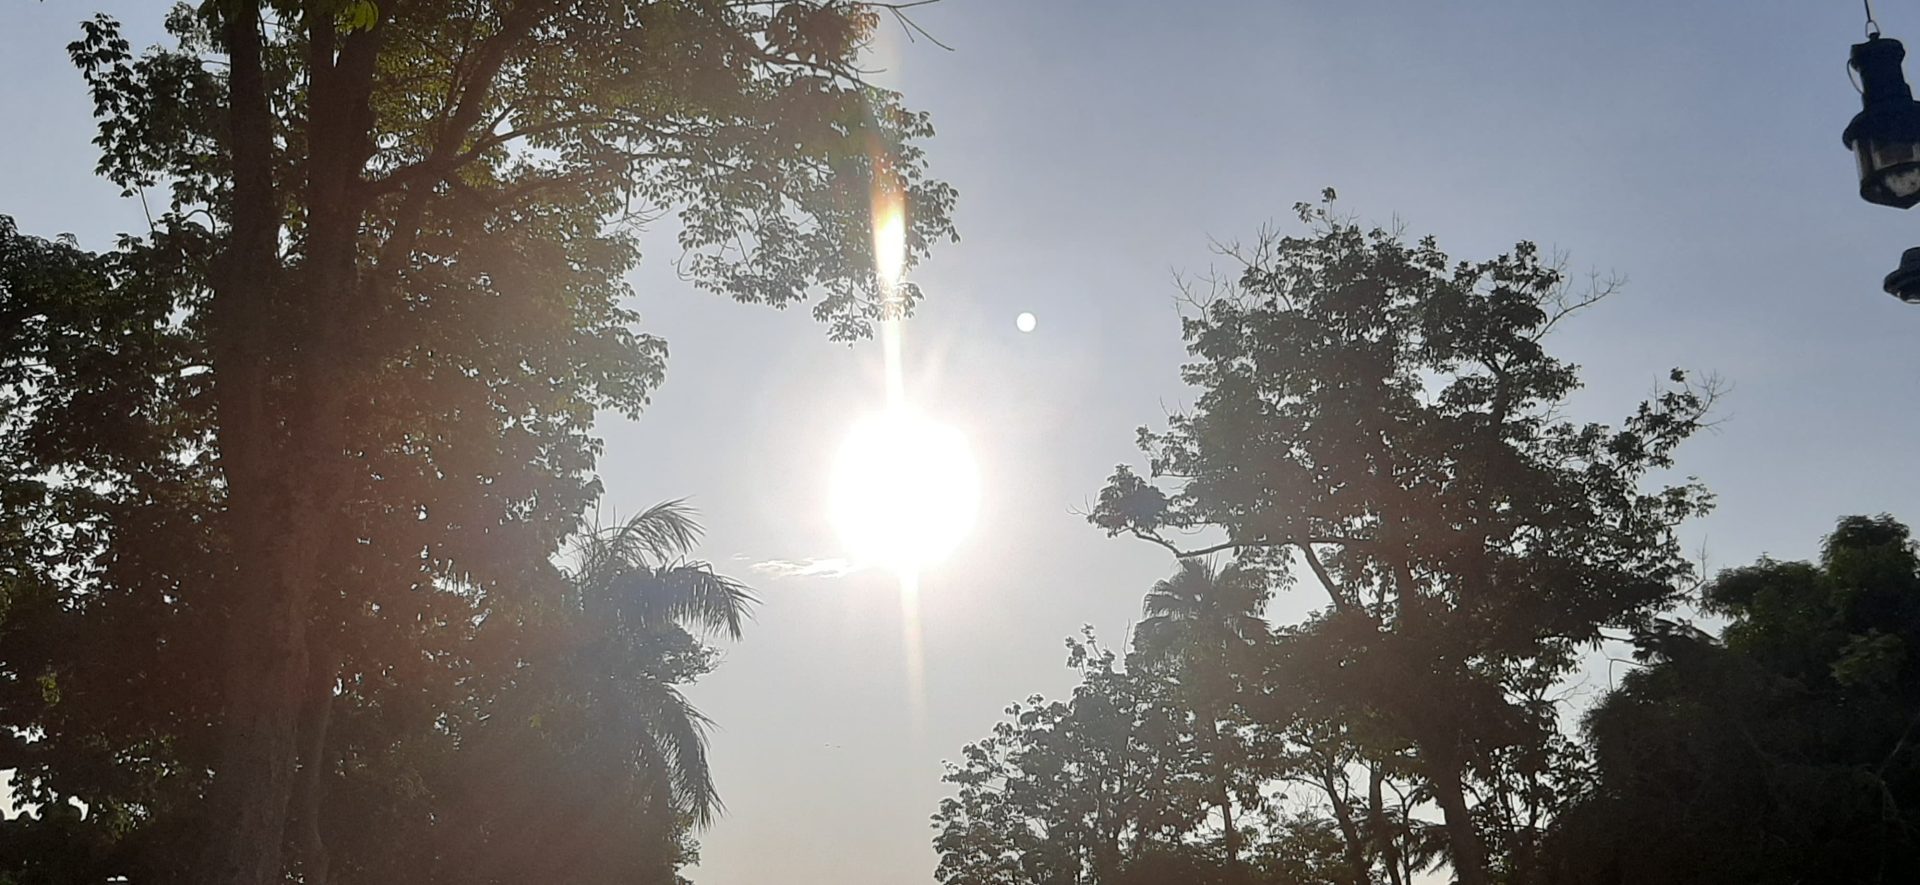 O calor amazonense deve continua até o fim do verão amazônico - Foto: Ana Kelly Franco/Portal Norte